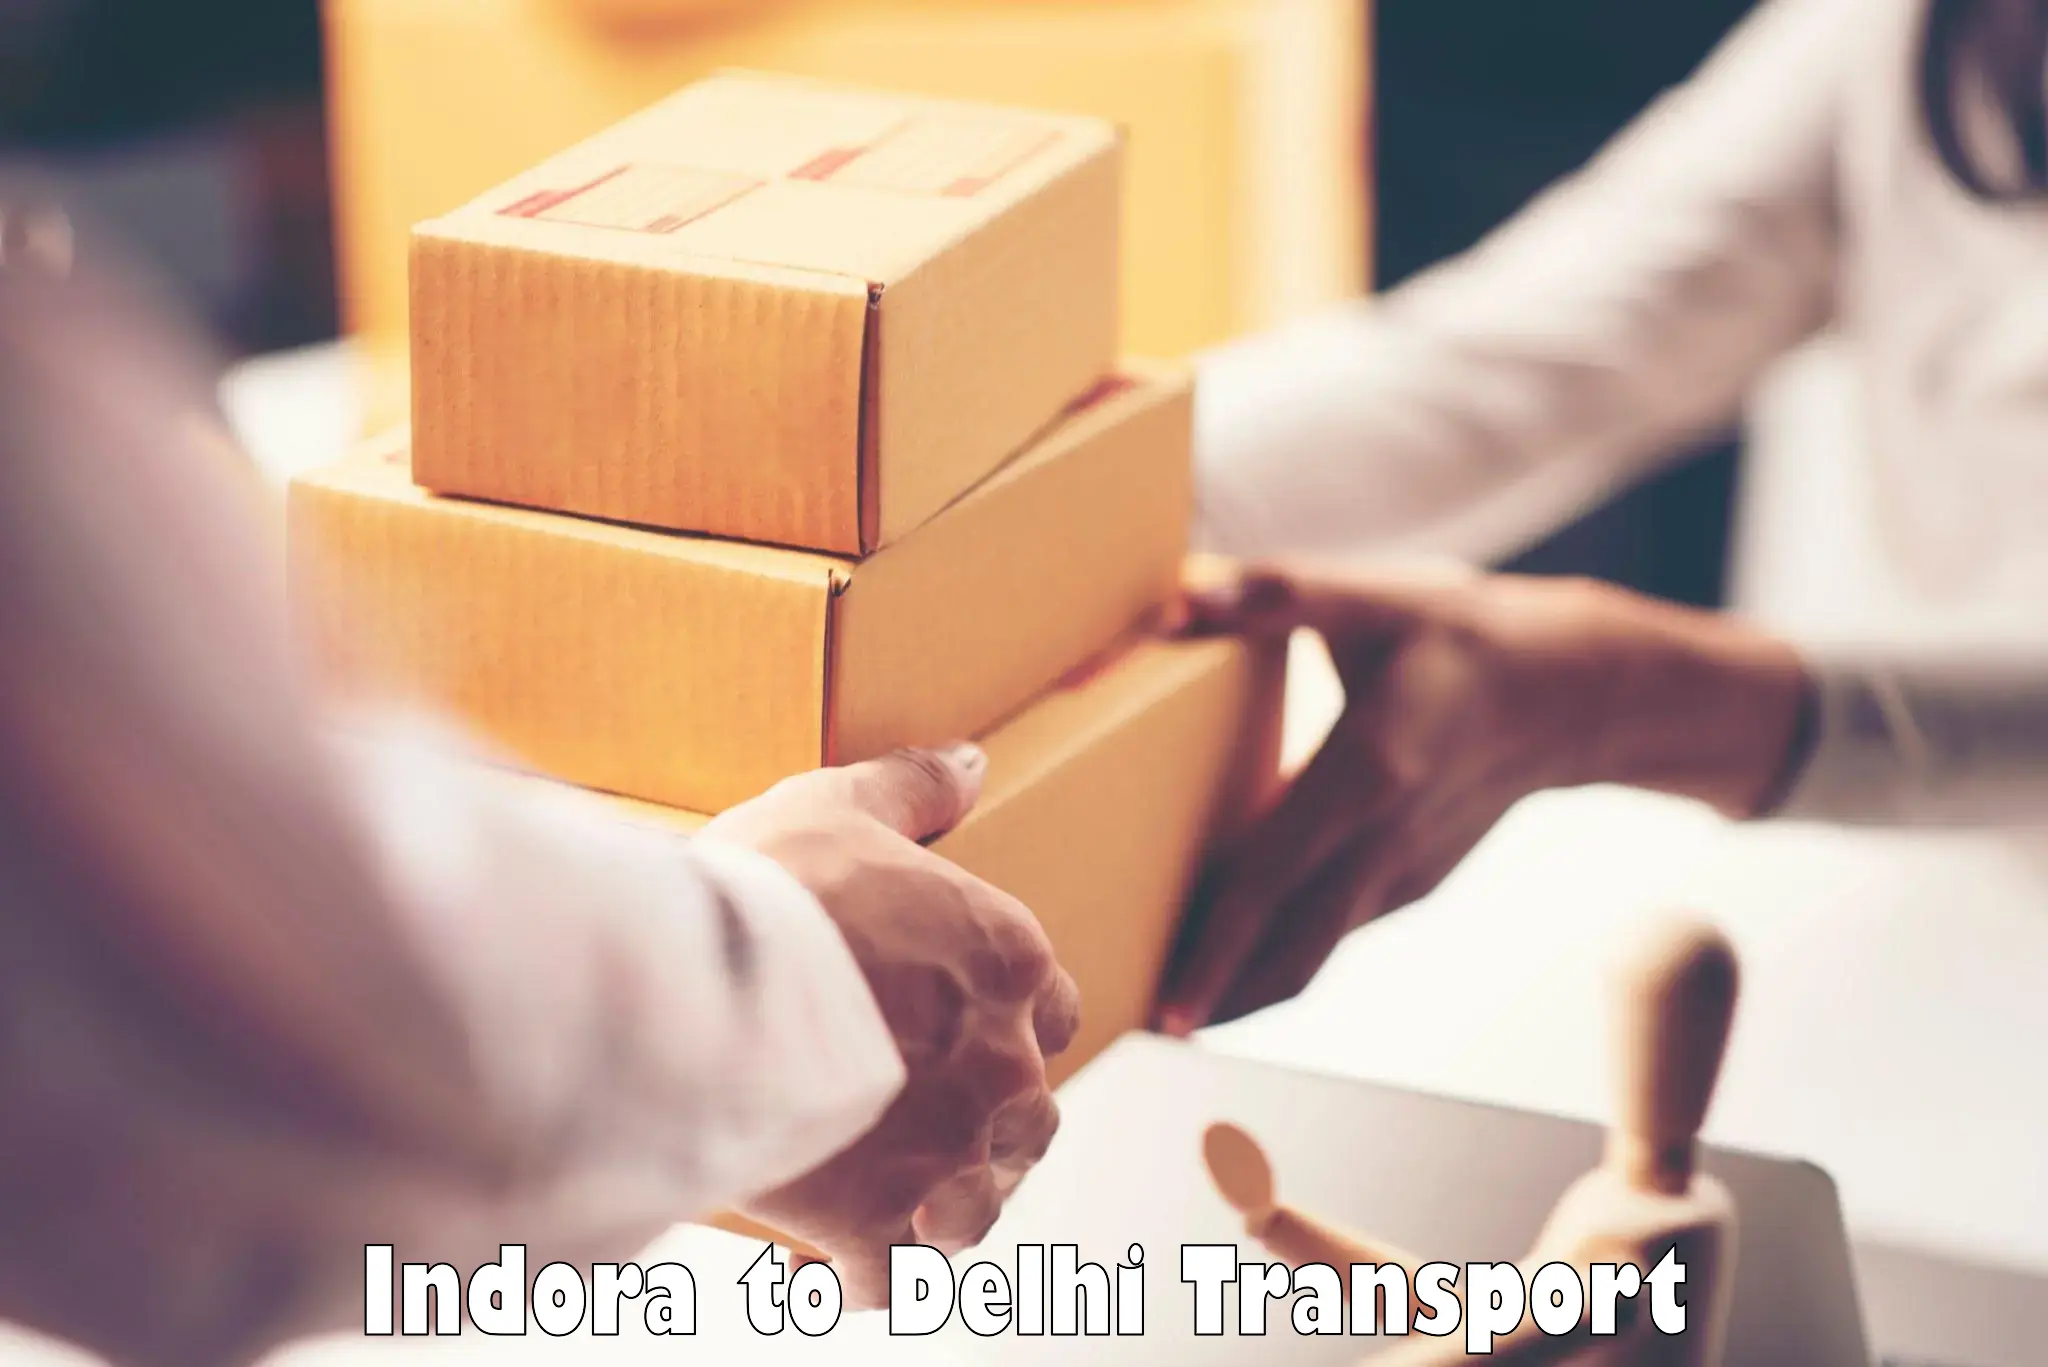 Container transport service Indora to Burari